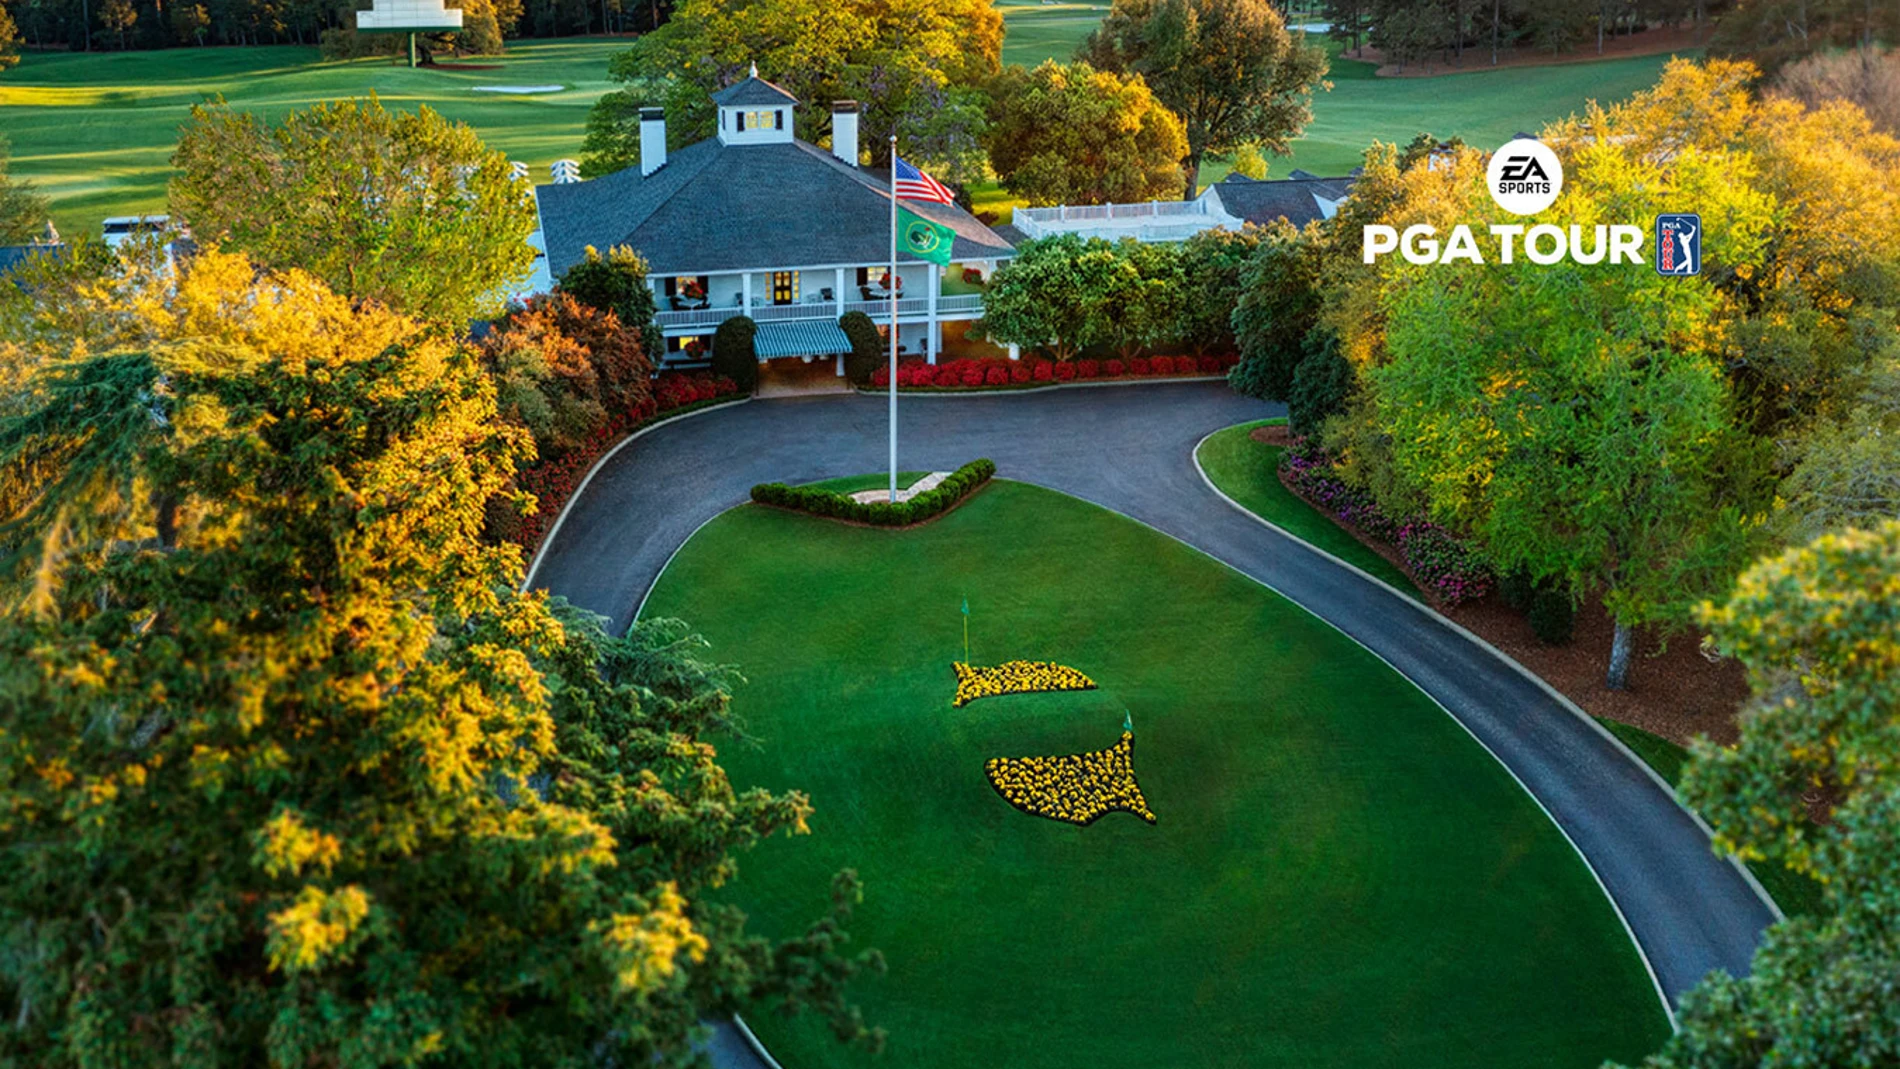 EA Sports PGA Tour: todos los detalles de la próxima edición del conocido simulador de golf.